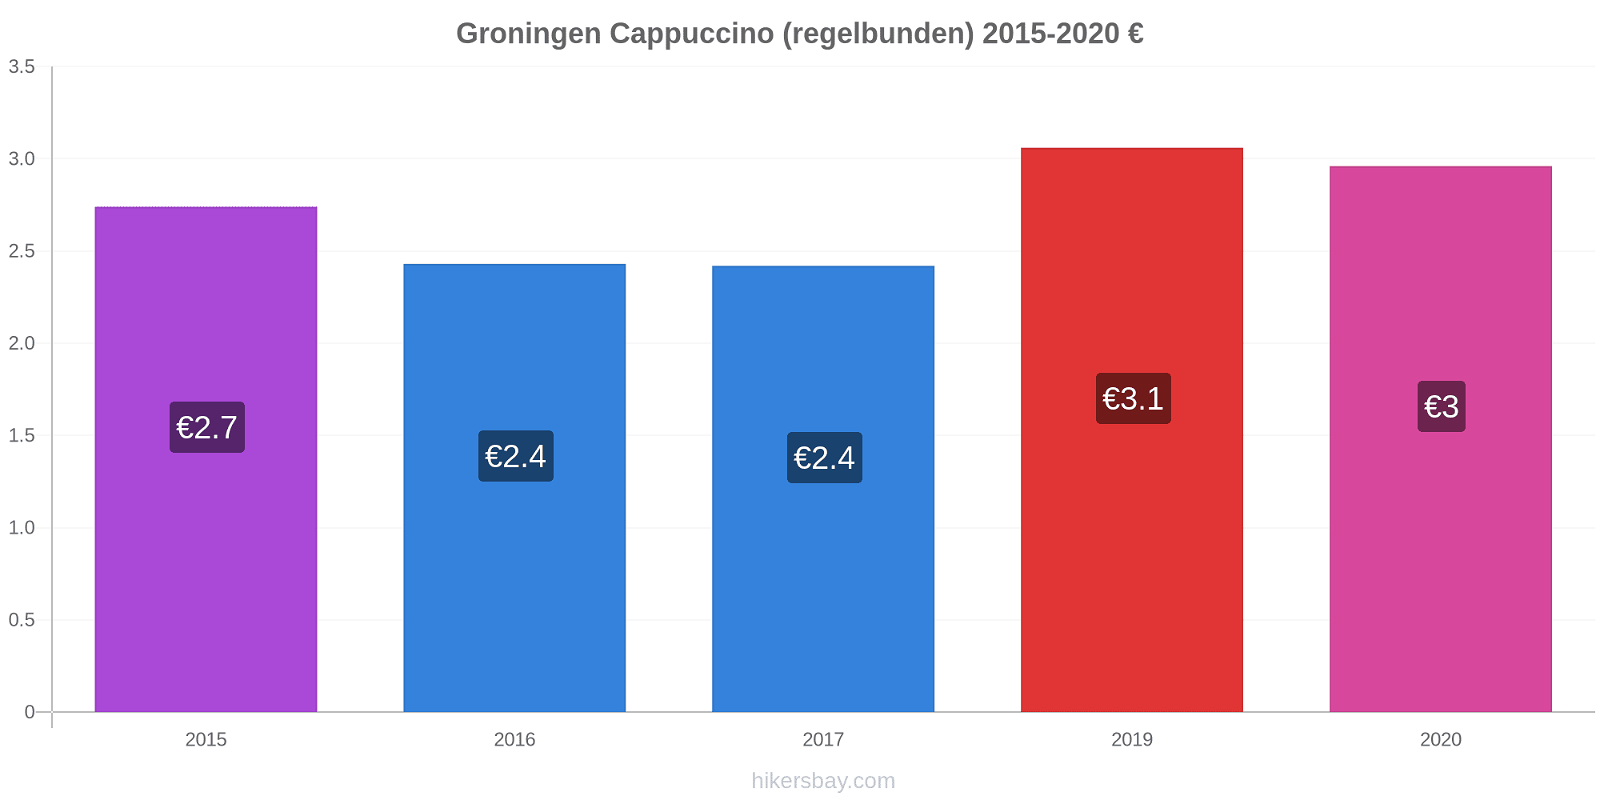 Groningen prisförändringar Cappuccino (regelbunden) hikersbay.com